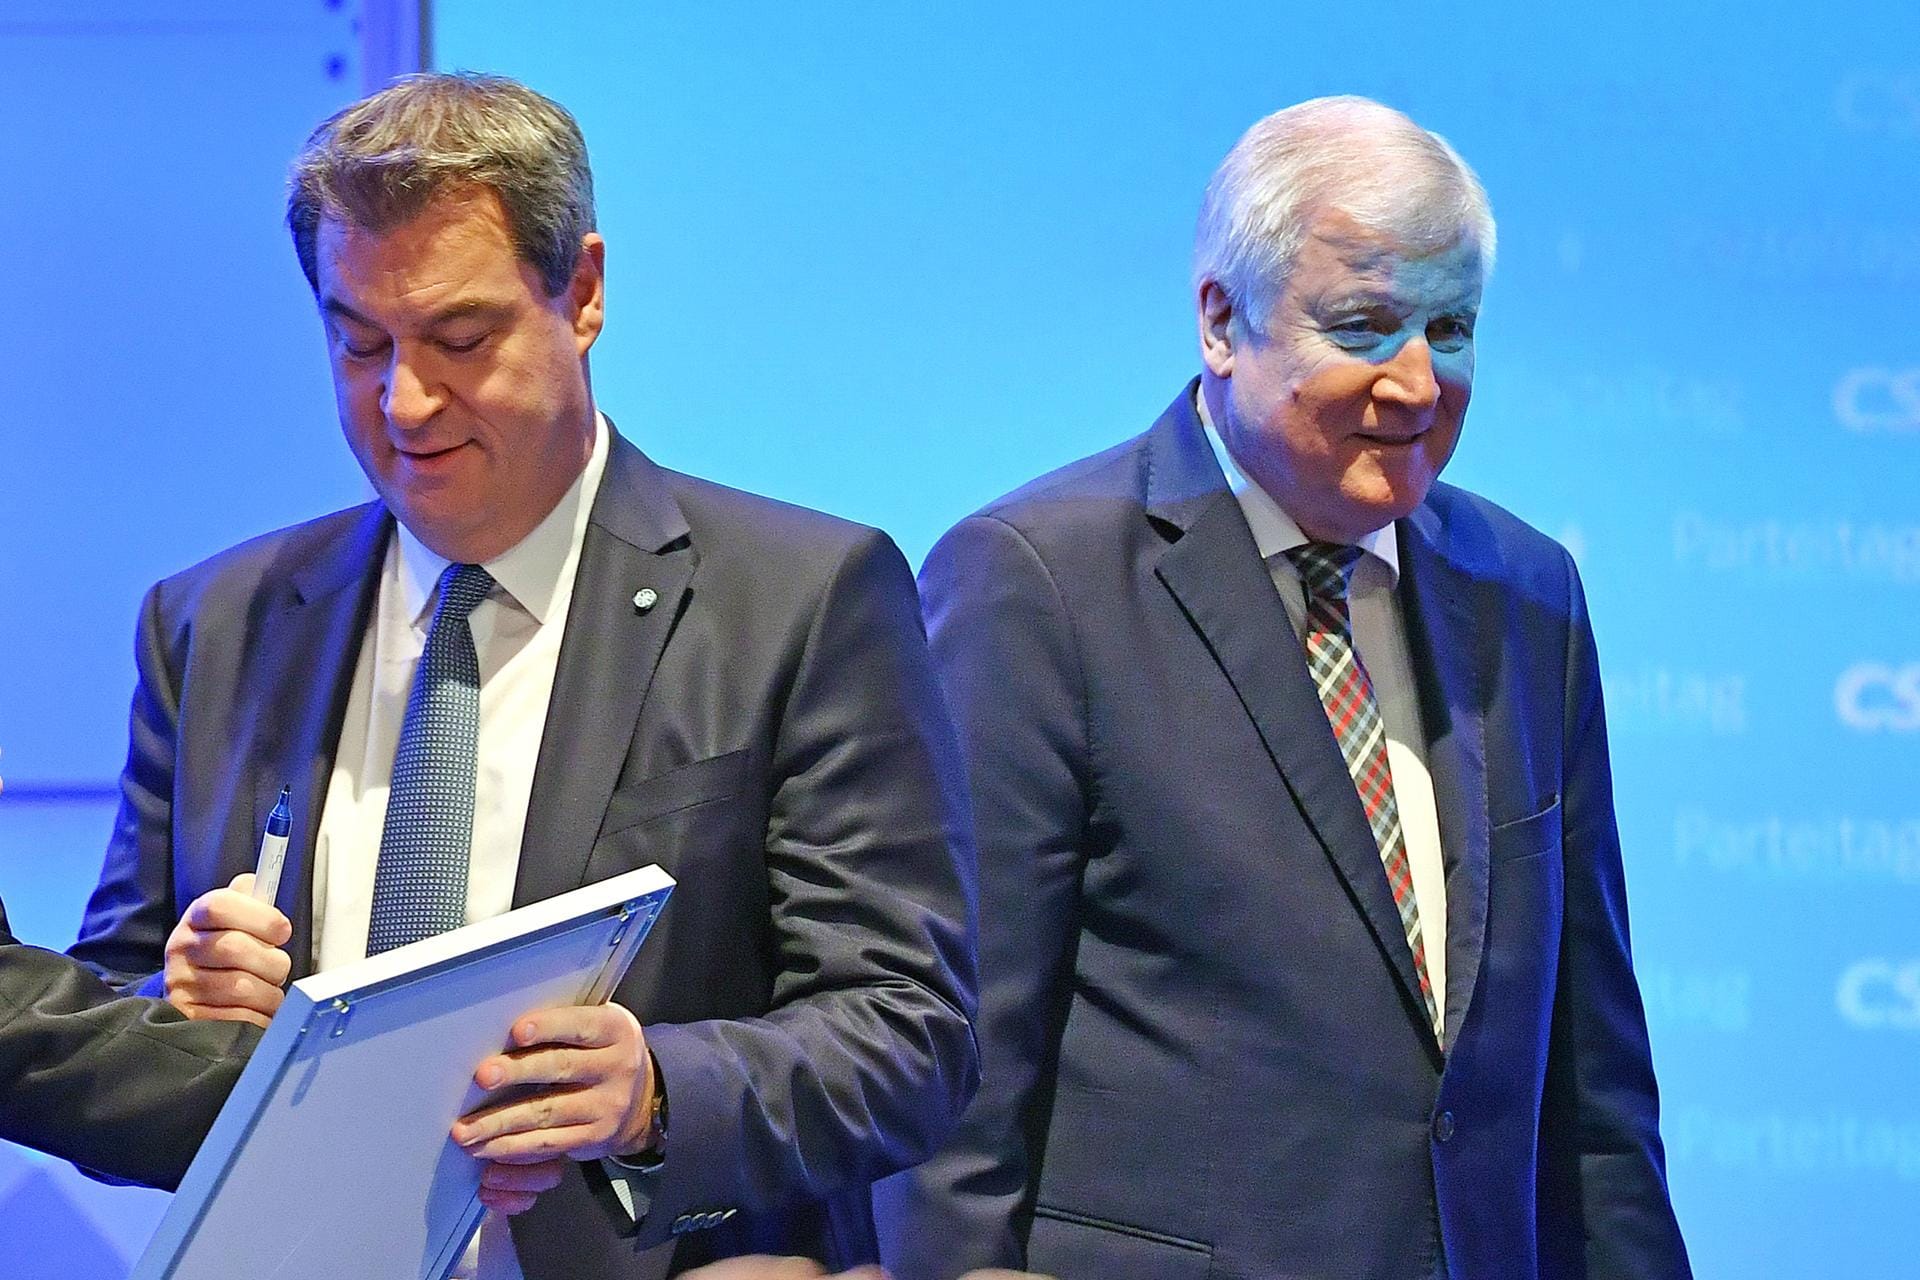 Anfang 2019 ist die Machtübergabe in der CSU dann vollendet: Ein Parteitag wählt Markus Söder zum Vorsitzenden, Horst Seehofer tritt ab und konzentriert sich künftig auf seinen Job in Berlin, wo er seit 2018 Innenminister ist.